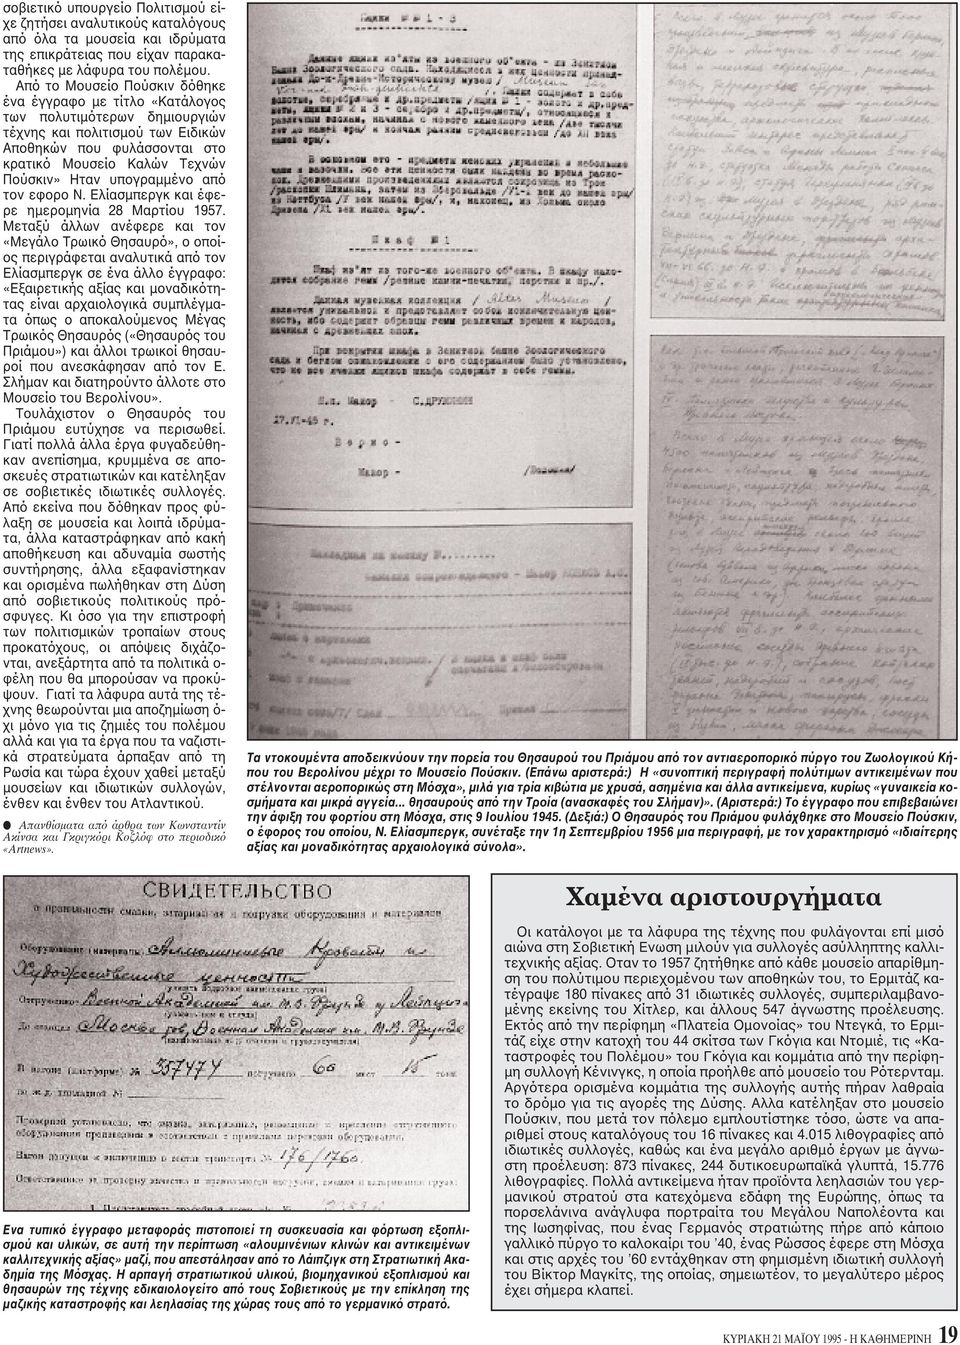 υπογραμμένο από τον εφορο N. Eλίασμπεργκ και έφερε ημερομηνία 28 Mαρτίου 1957.